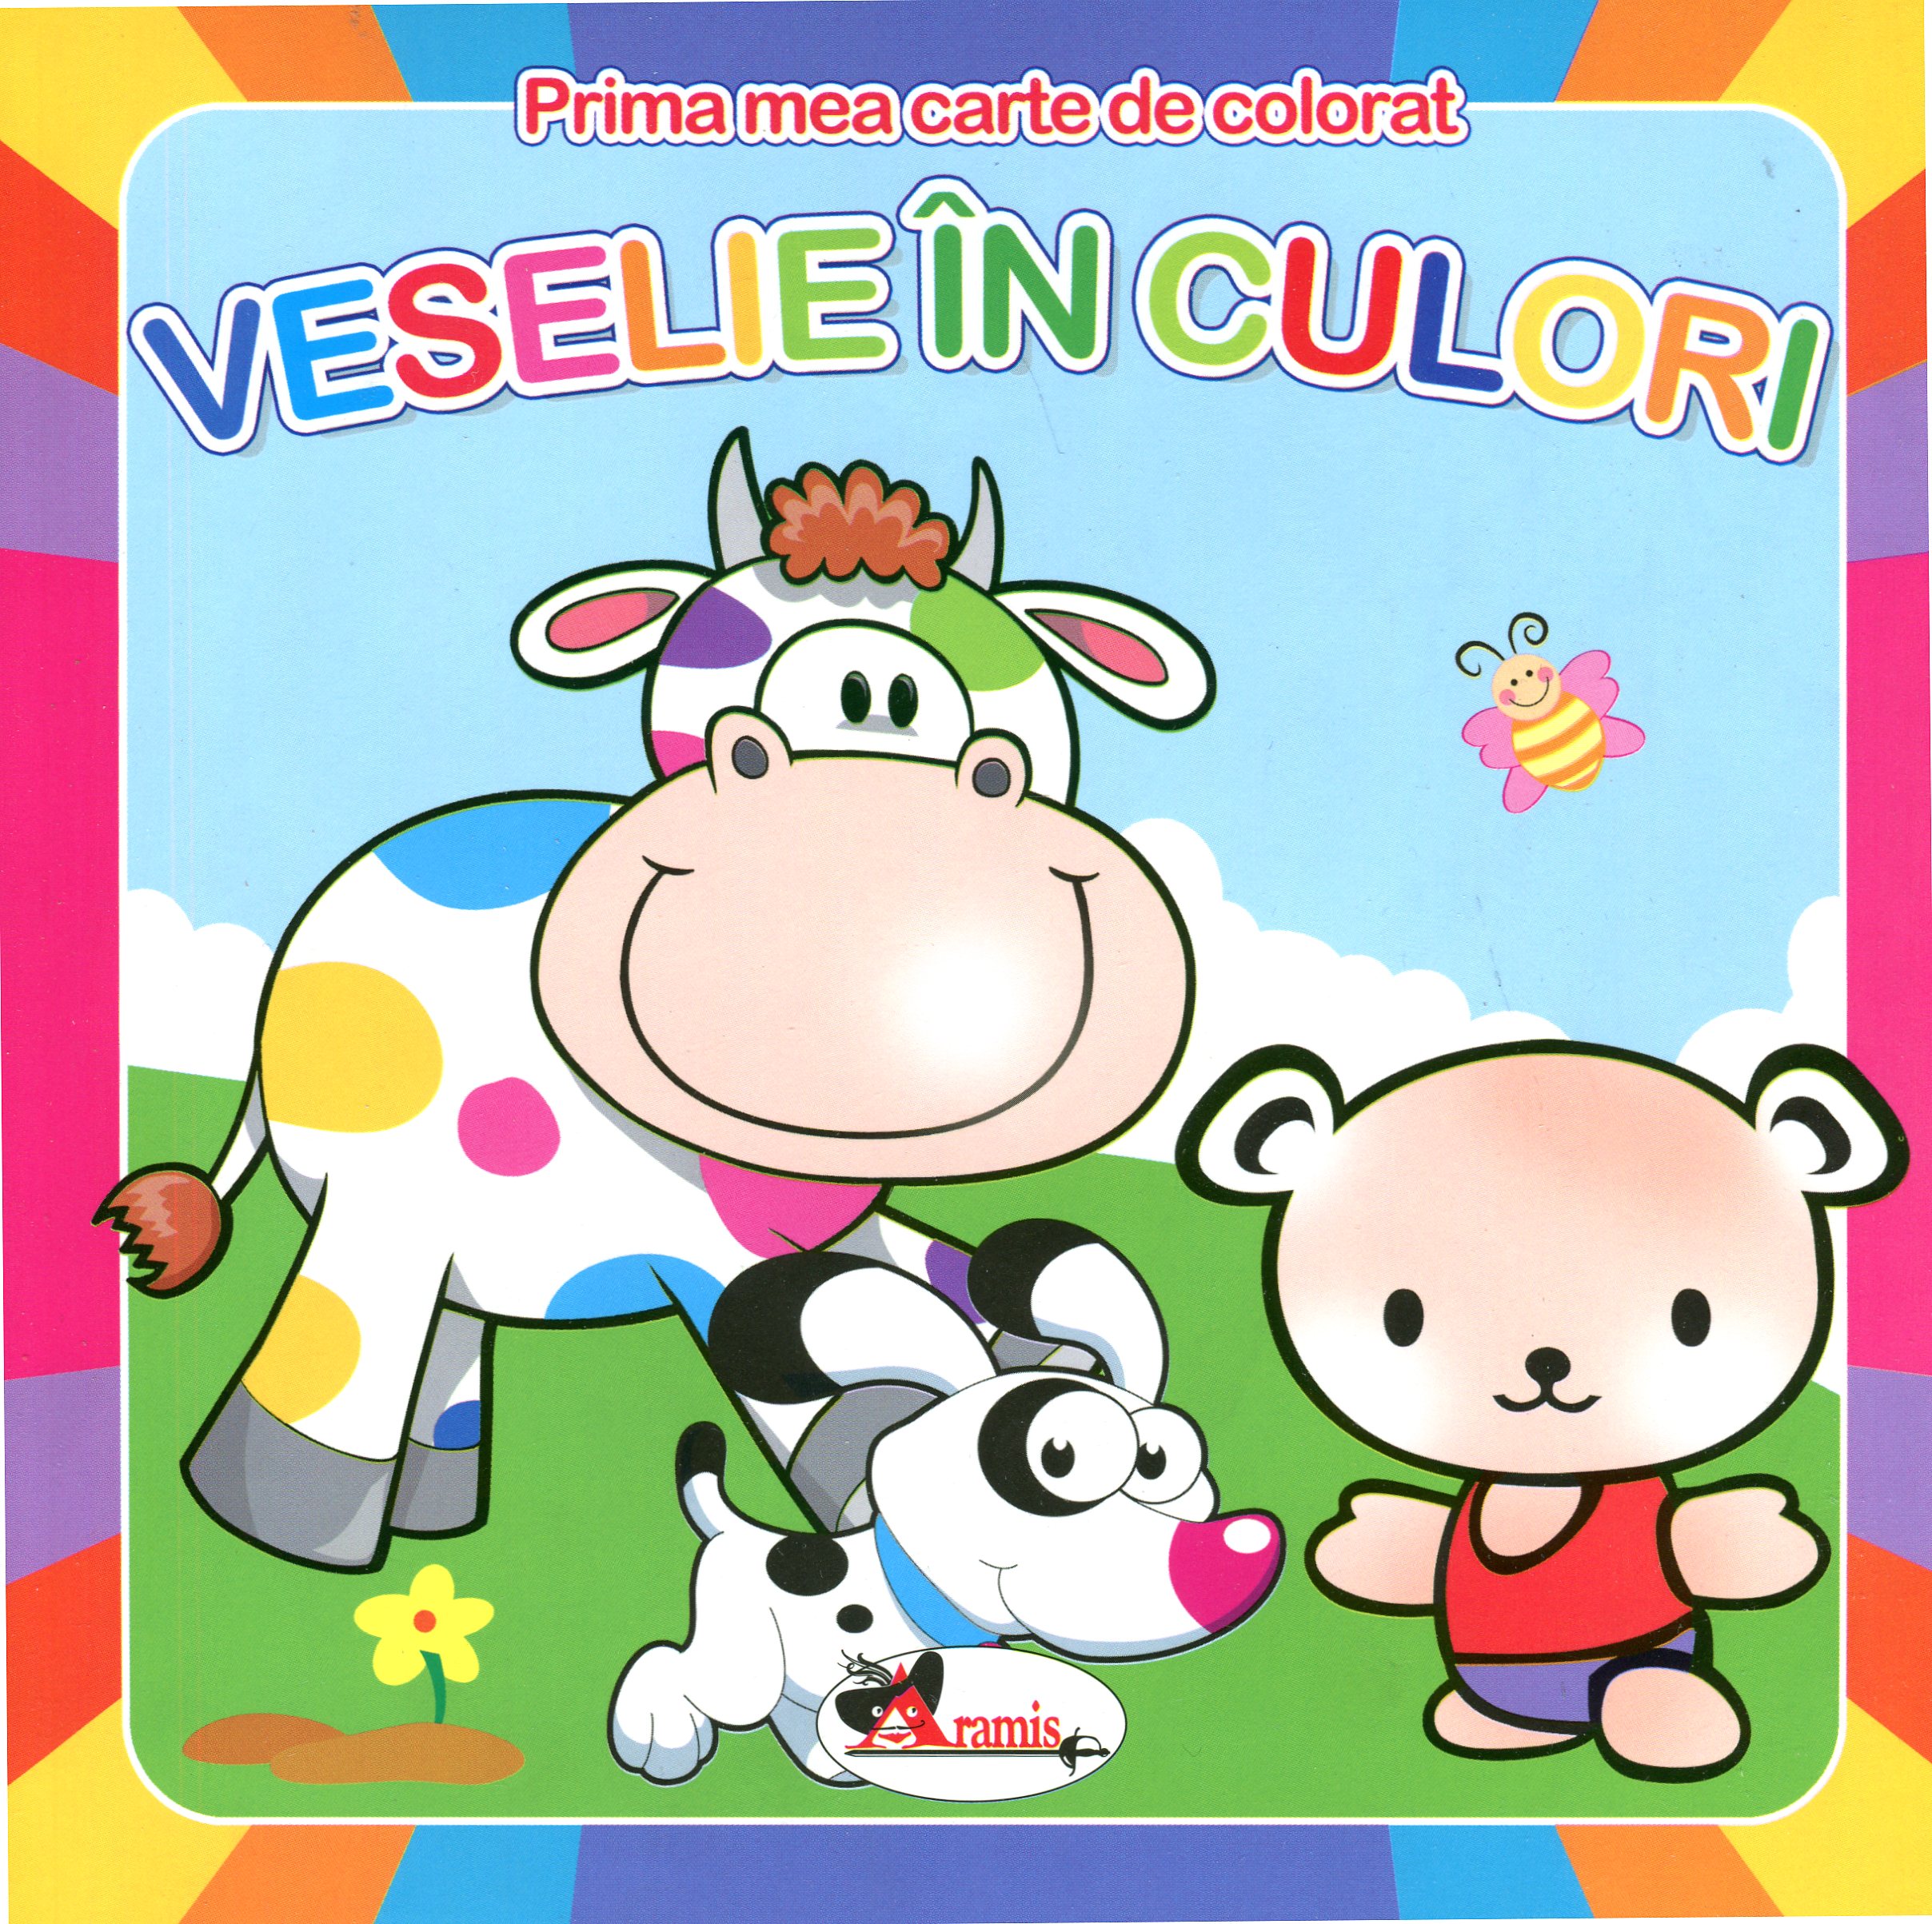 Veselie in culori - Prima mea carte de colorat